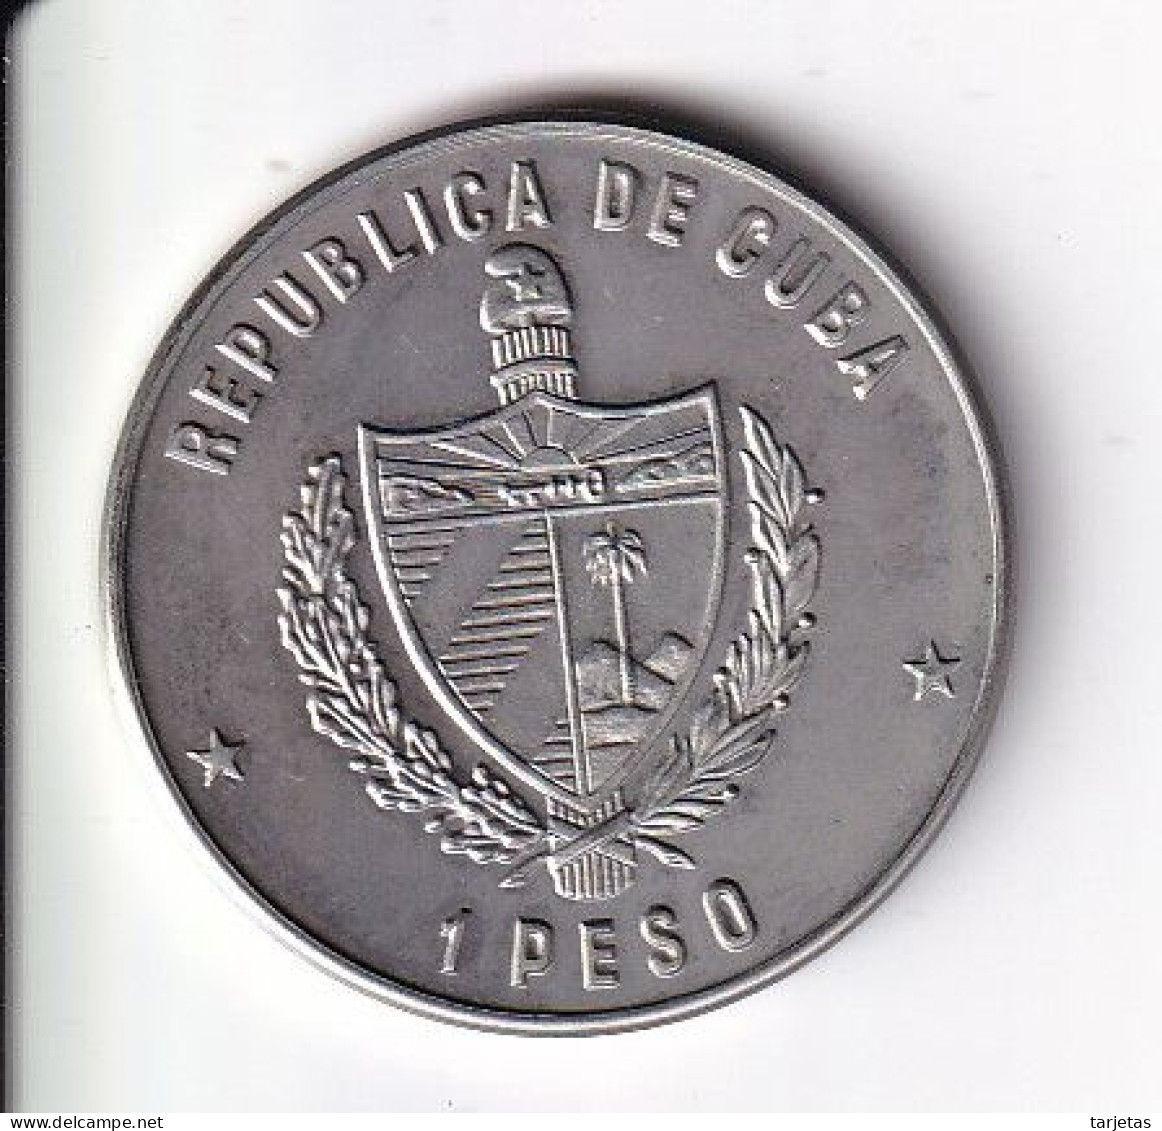 MONEDA DE CUBA DE 1 PESO DEL AÑO 1981 DEL TOCORORO (COIN) (NUEVA - UNC) - Cuba